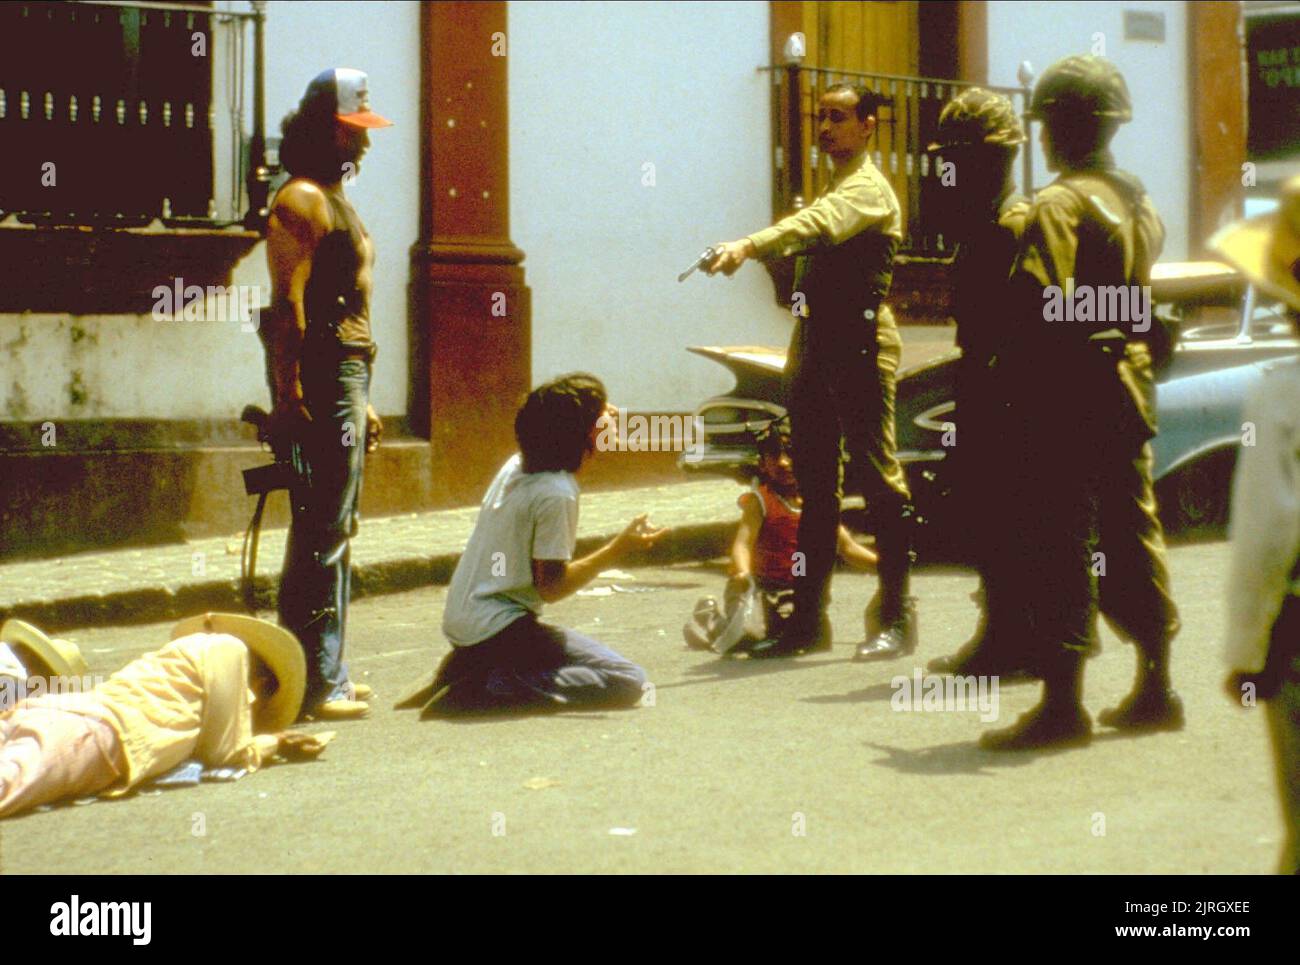 EXECUTION SCENE, SALVADOR, 1986 Stock Photo